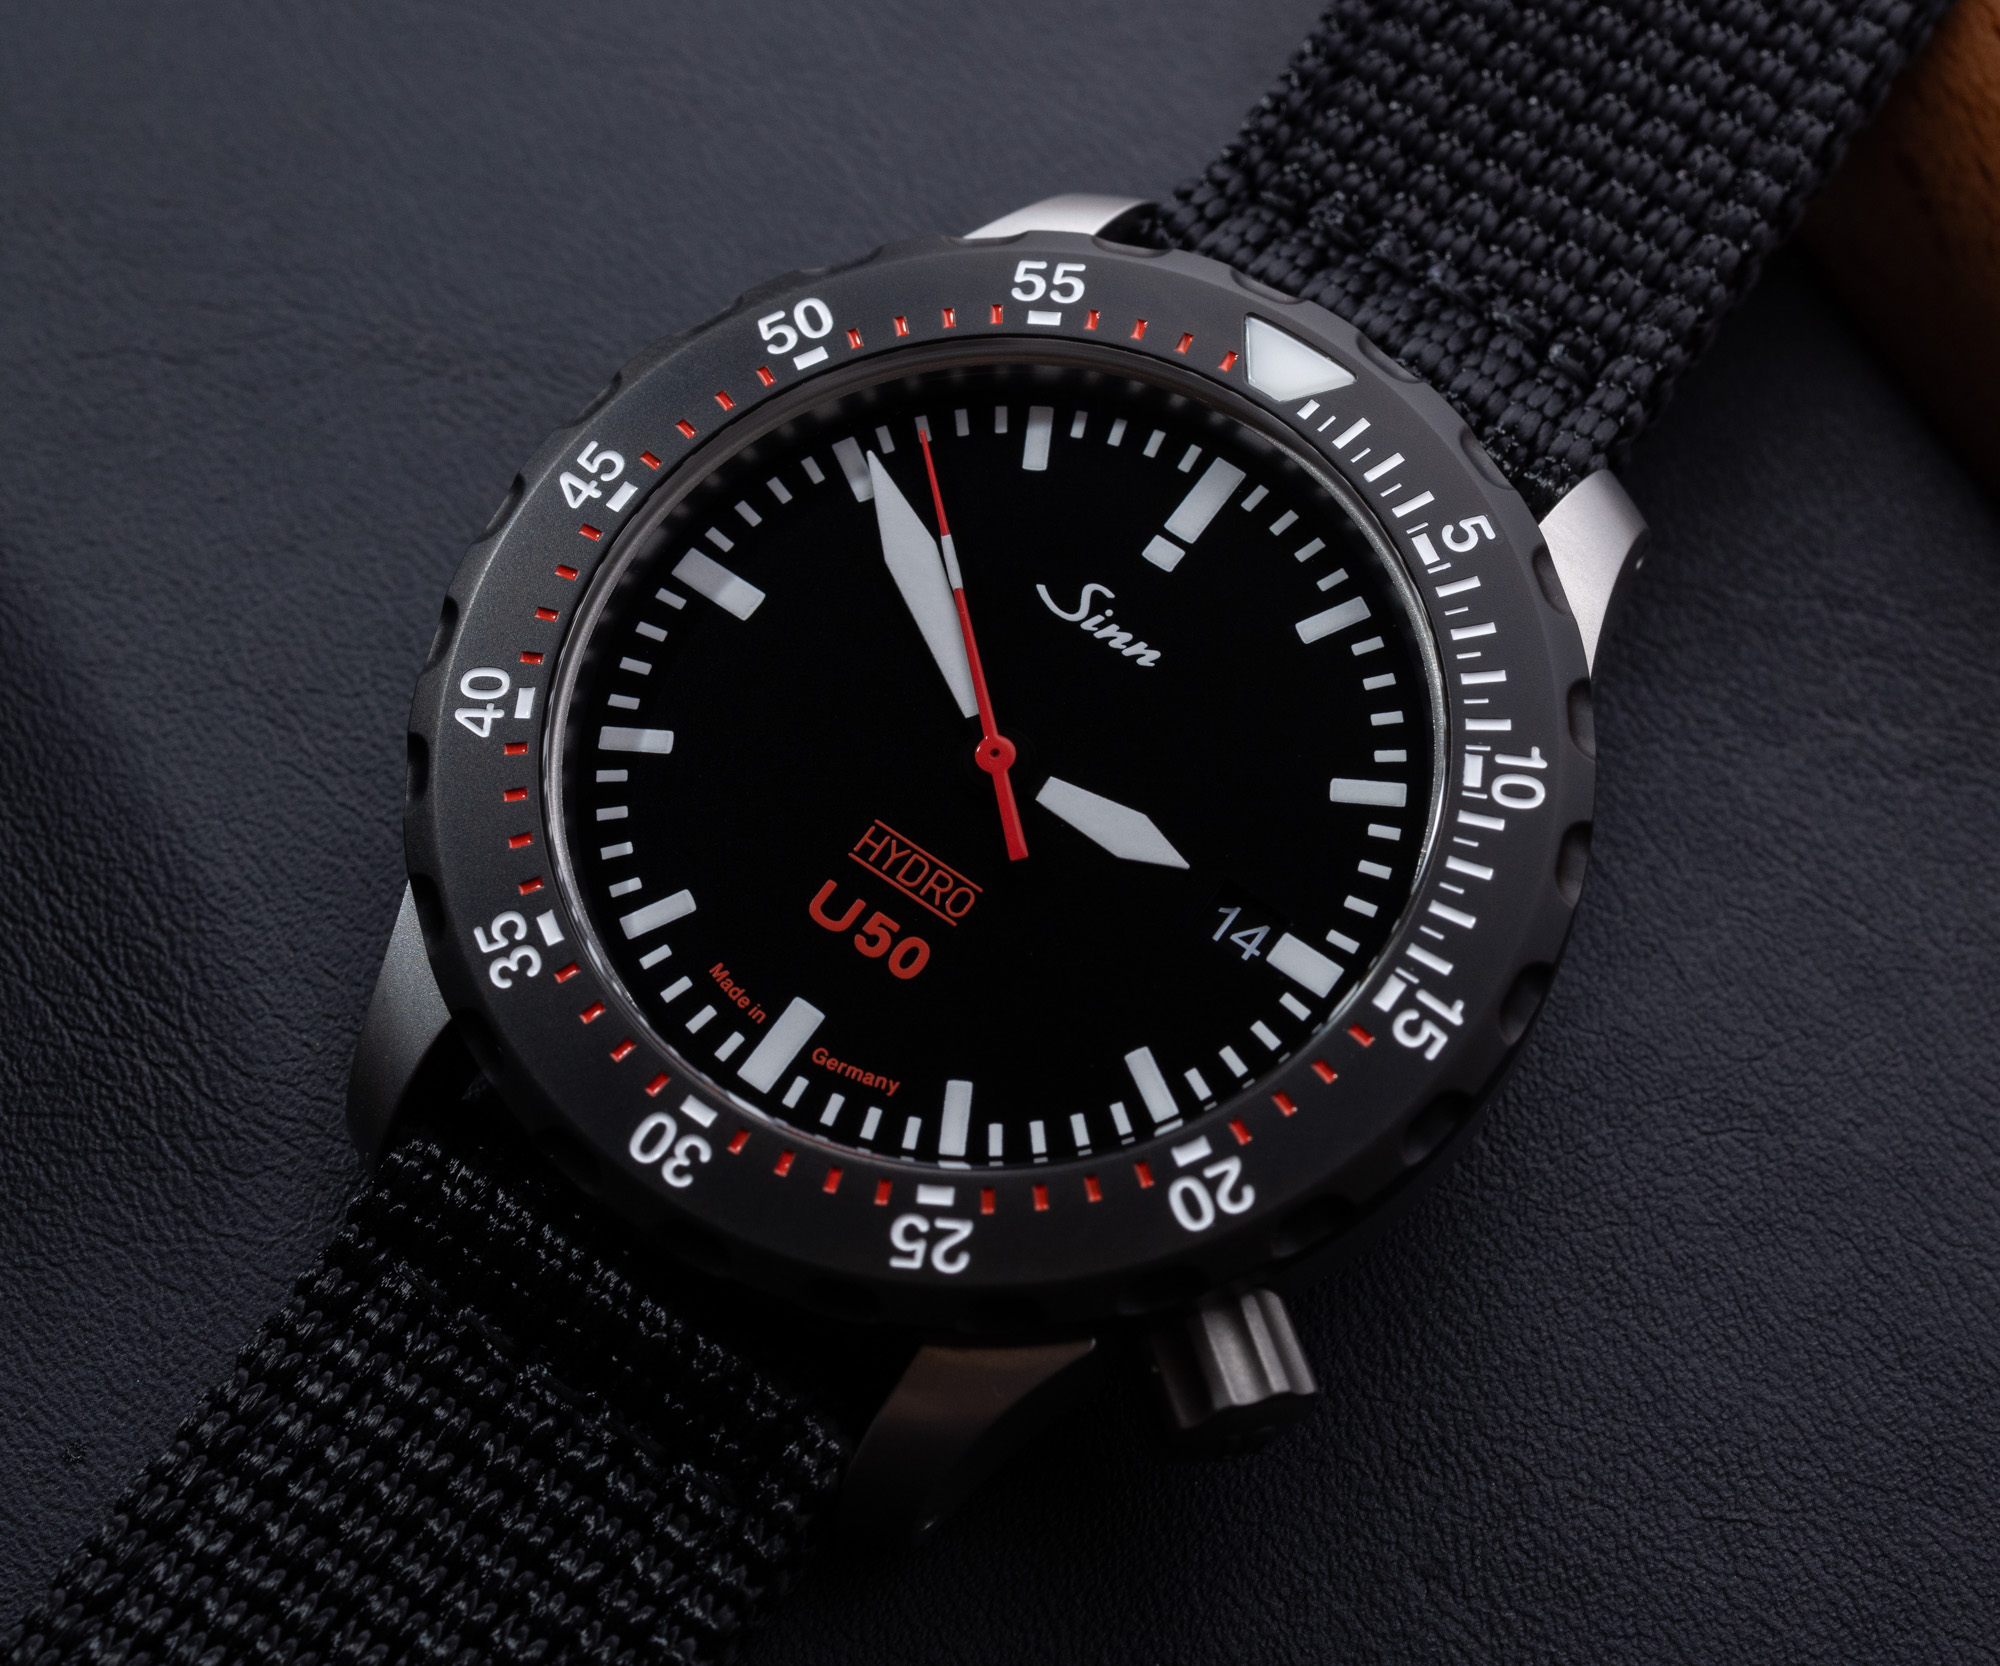 Наручные часы: Sinn U50 Hydro Oil-Filled Diver's Watches